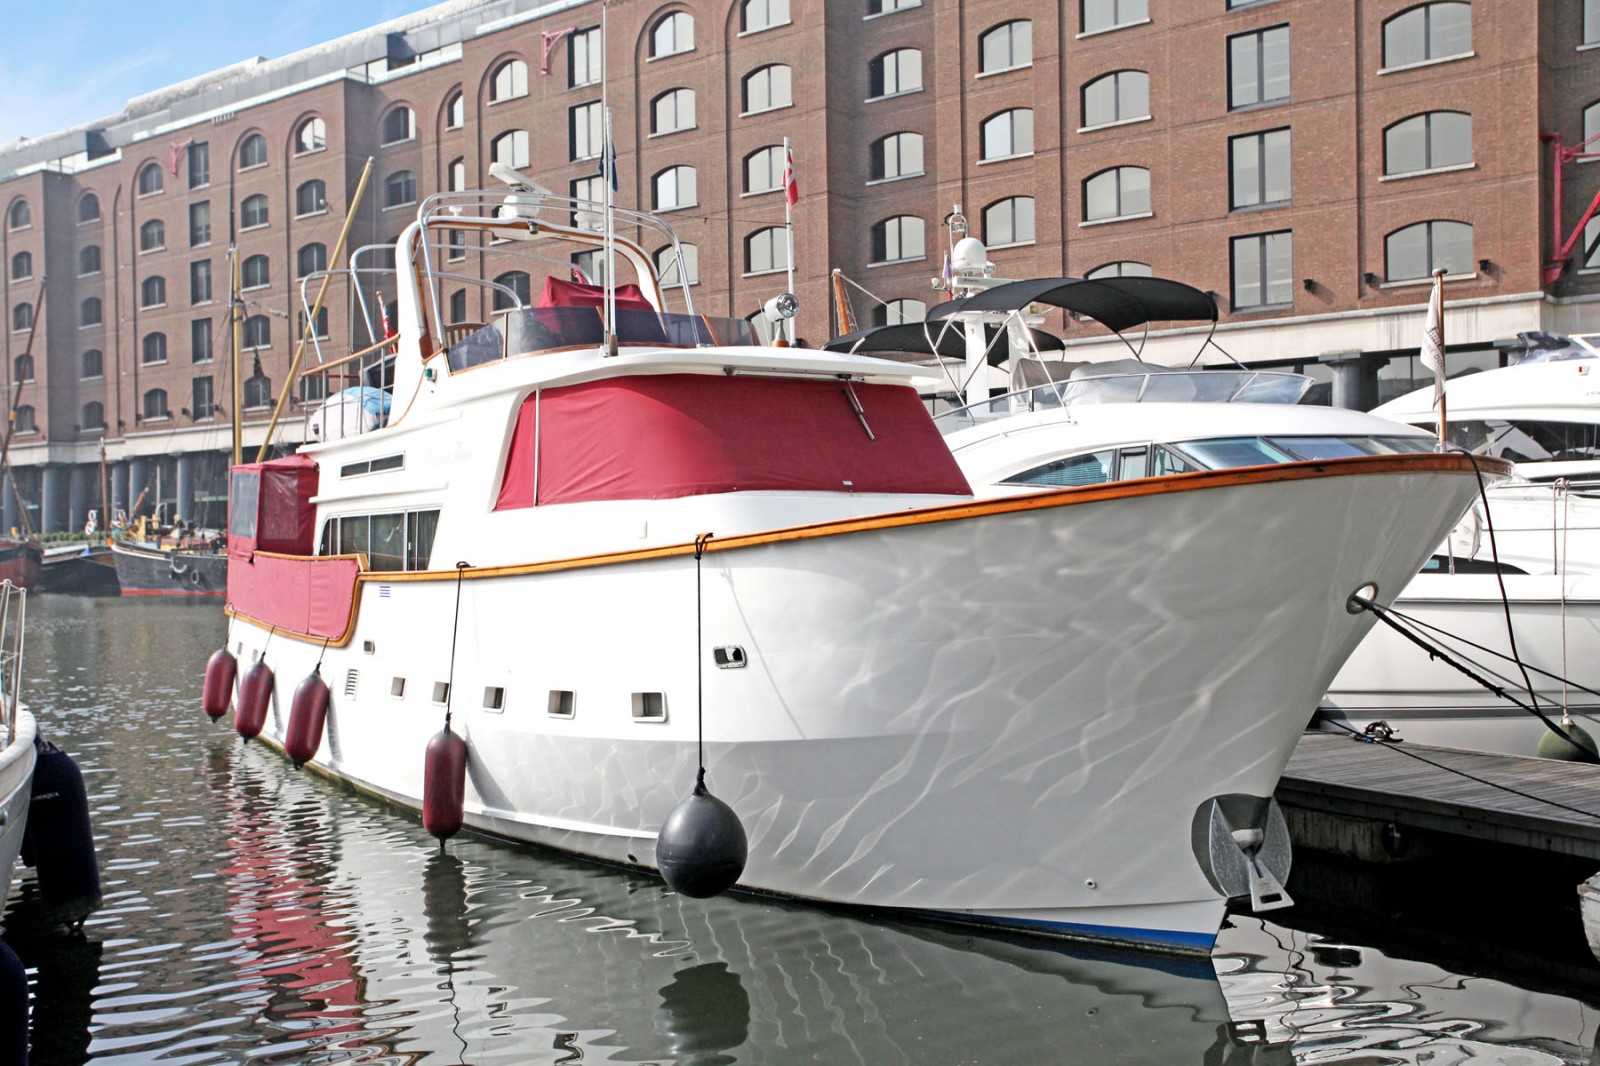 St Katharine dock yacht